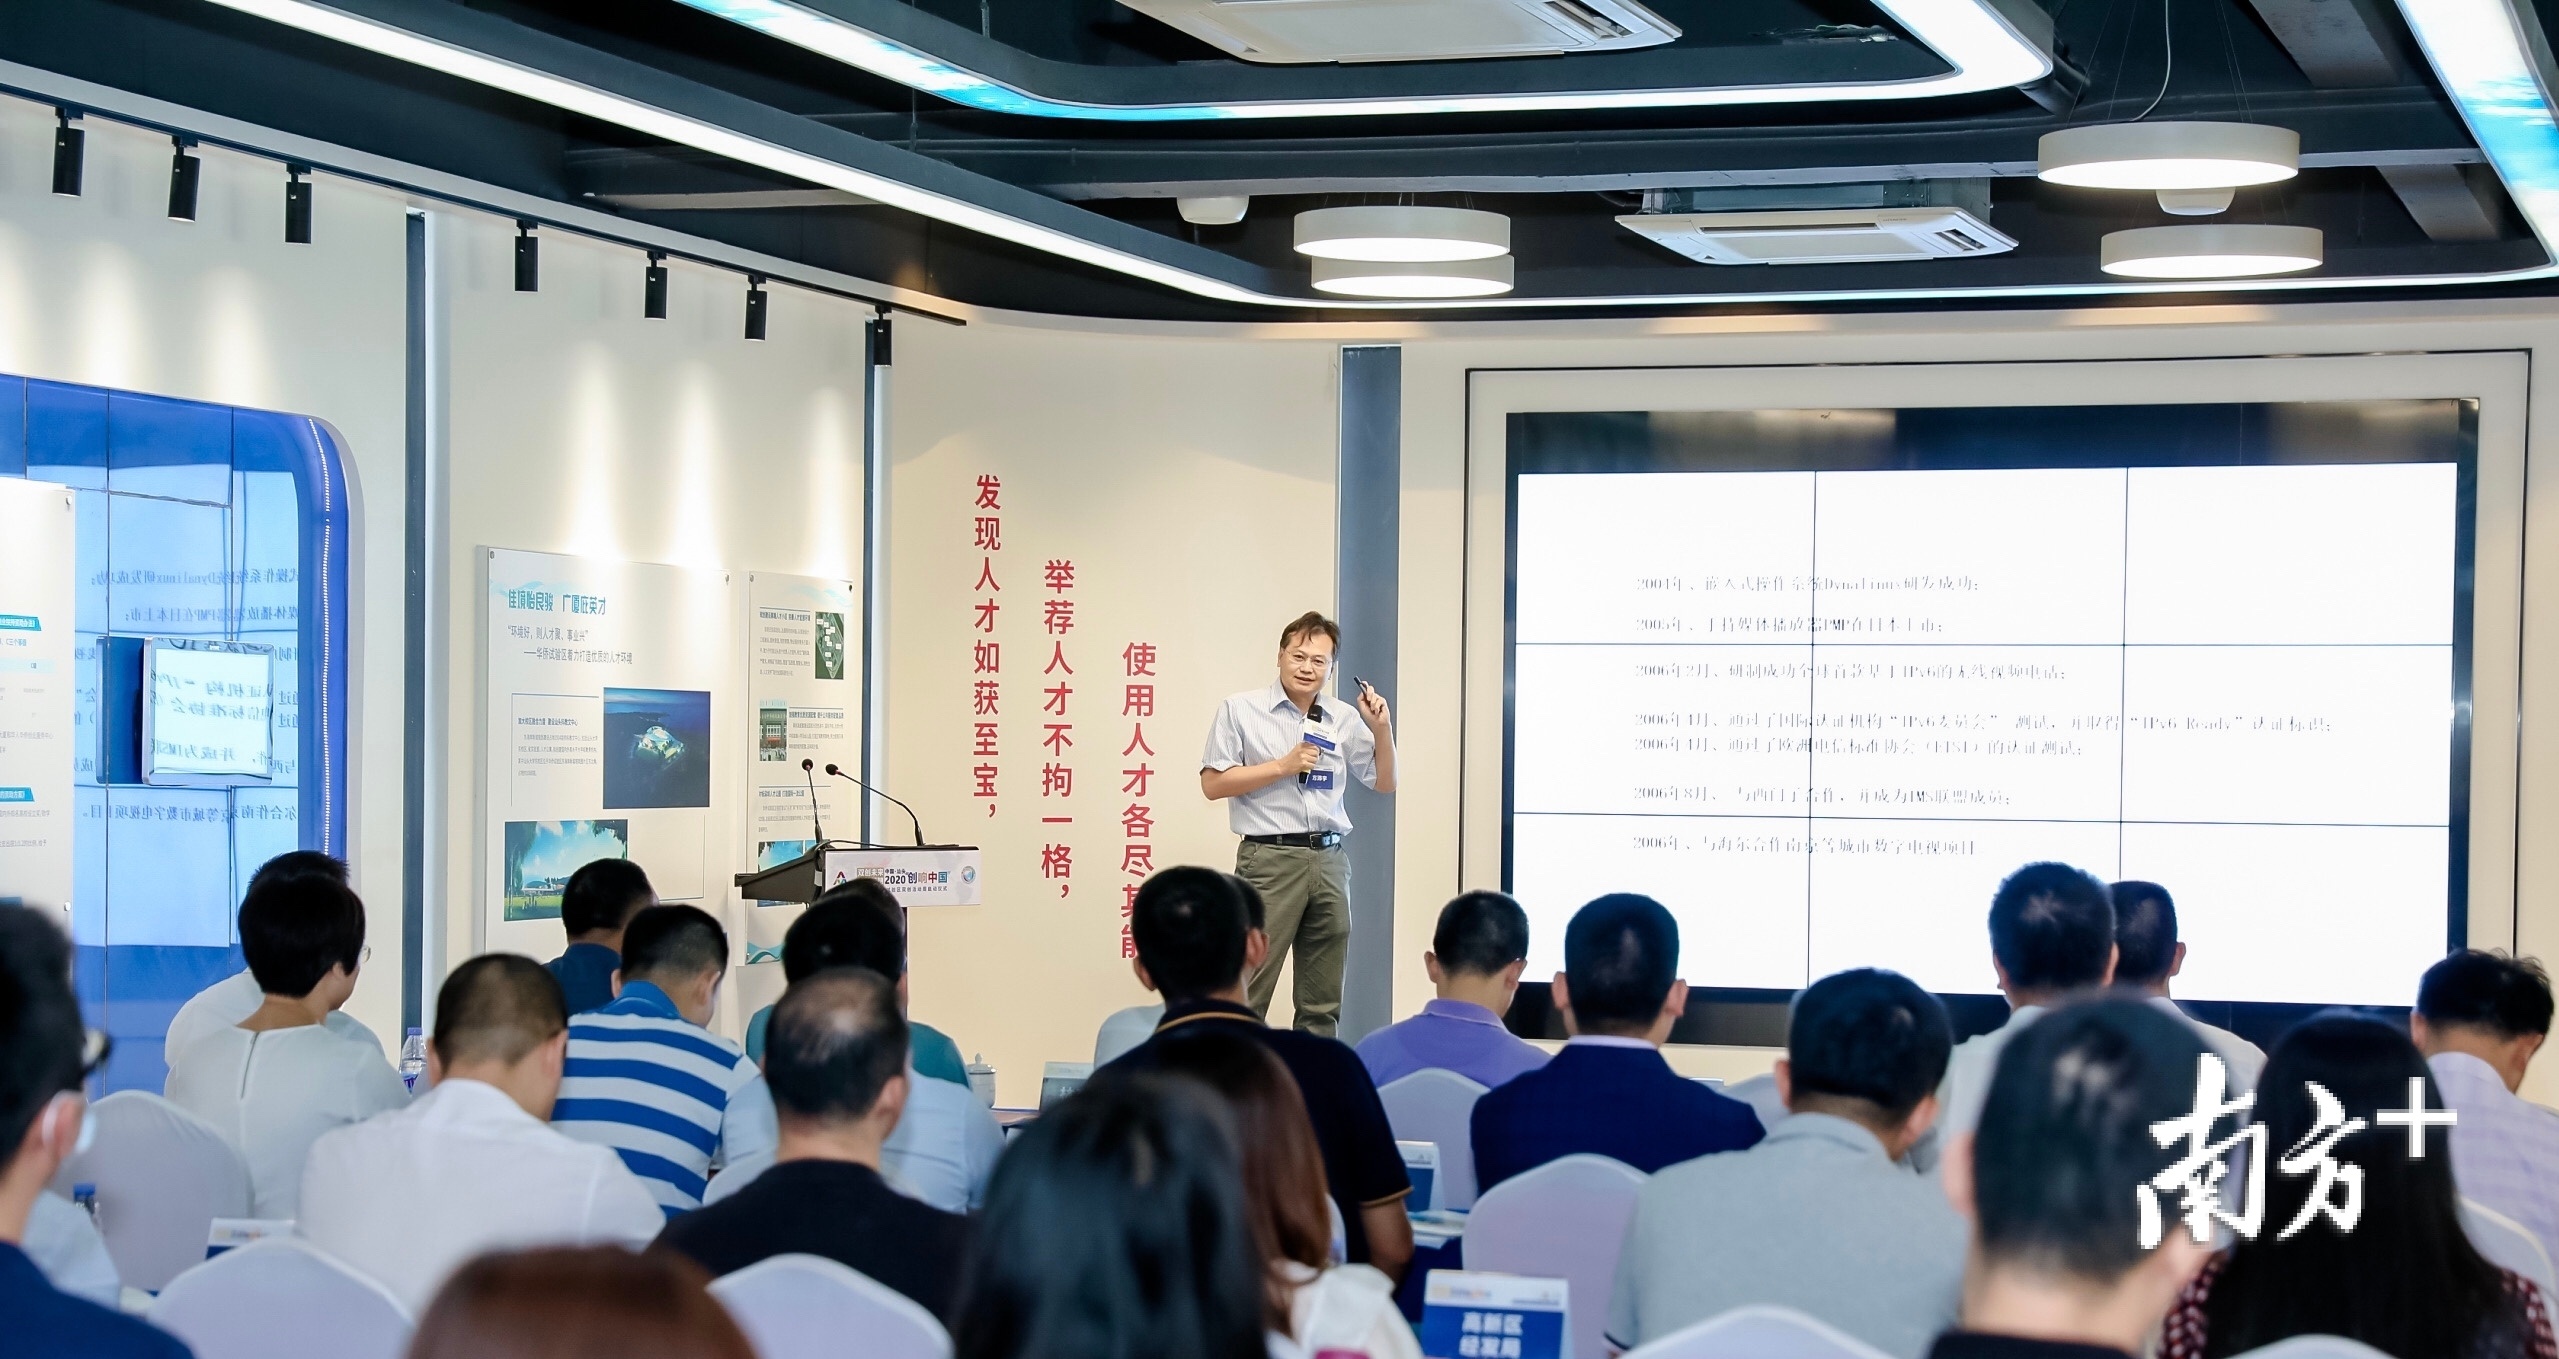 汕头华侨试验区将打造“众创空间+孵化器+加速器+科技产业园区”创新创业人才项目孵化全链条。